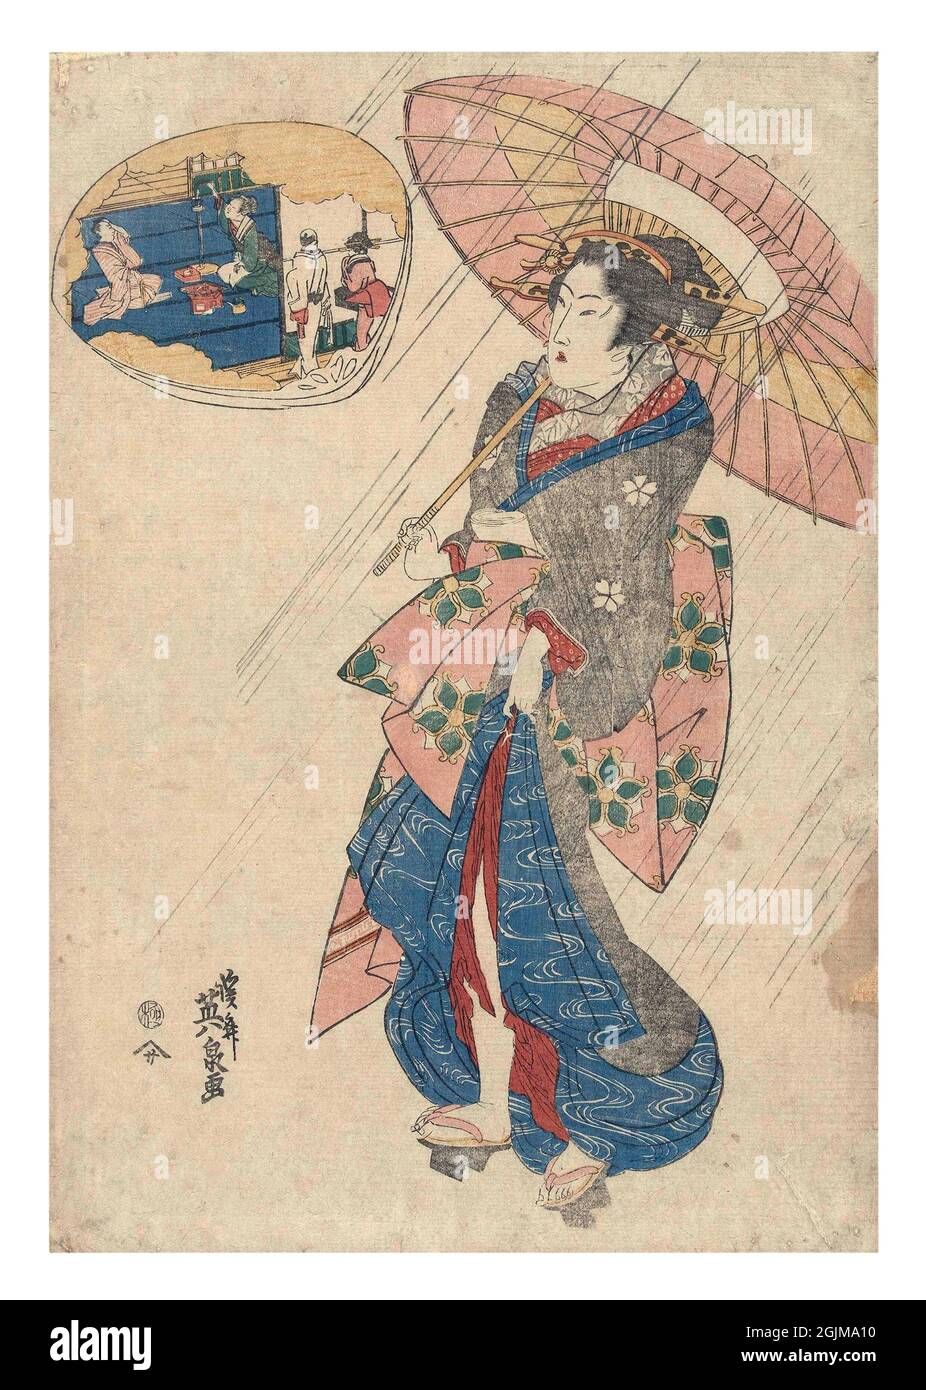 Illustration japonaise boisée optimisée numériquement au XIXe siècle. Courtesan sous la pluie, sous un parapluie, regardant une cartouche en forme de coquille représentant l'intérieur d'un salon de thé. Banque D'Images